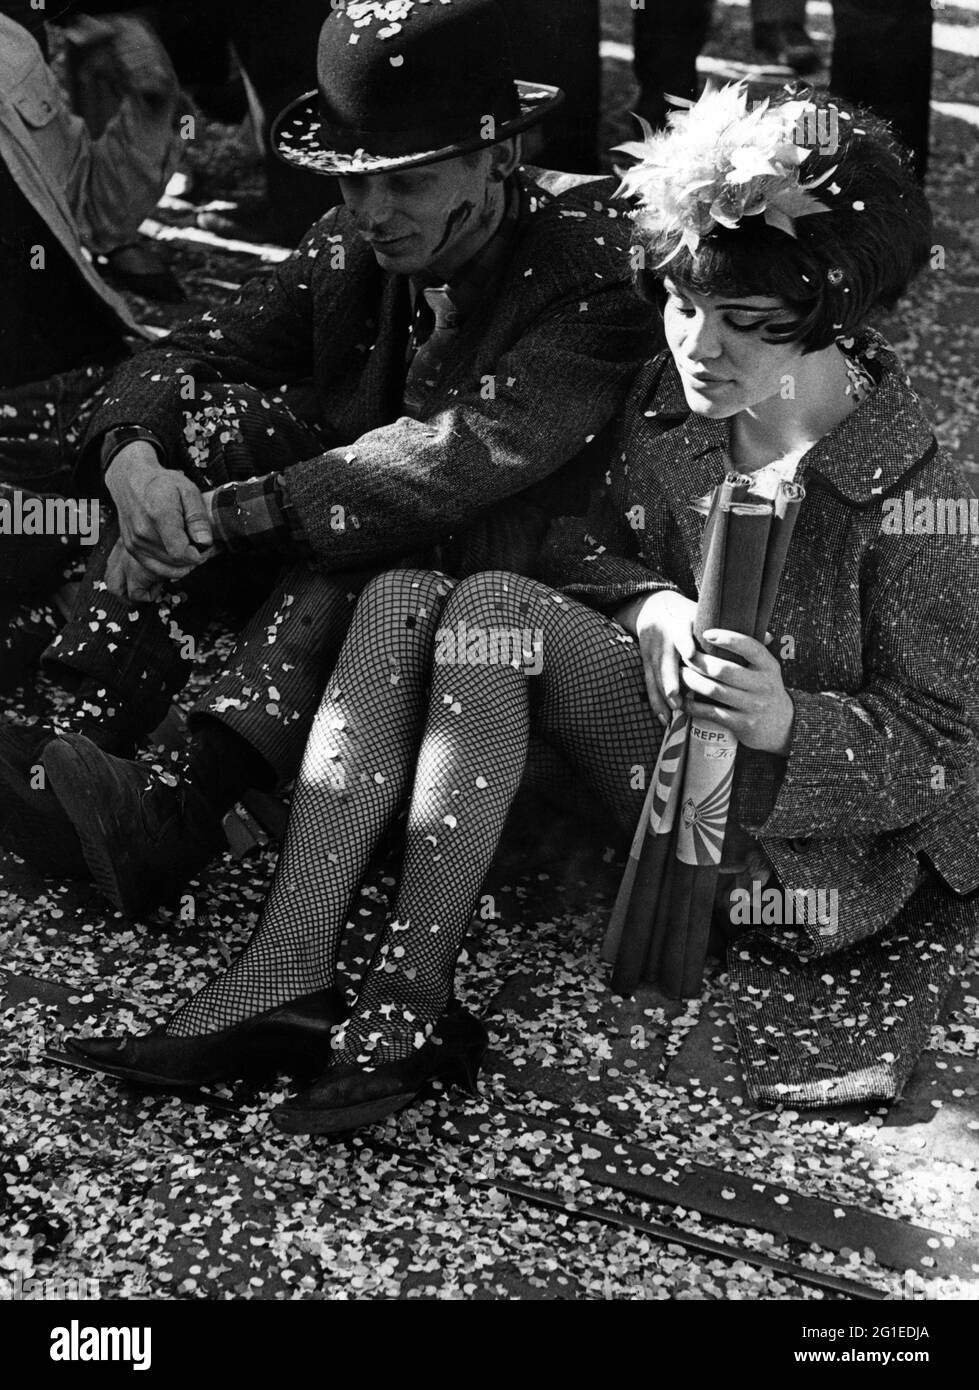 Festlichkeiten, Karneval, maskiertes Paar sitzt auf dem Bürgersteig, Deutschland, 60er Jahre, ZUSÄTZLICHE-RIGHTS-CLEARANCE-INFO-NOT-AVAILABLE Stockfoto